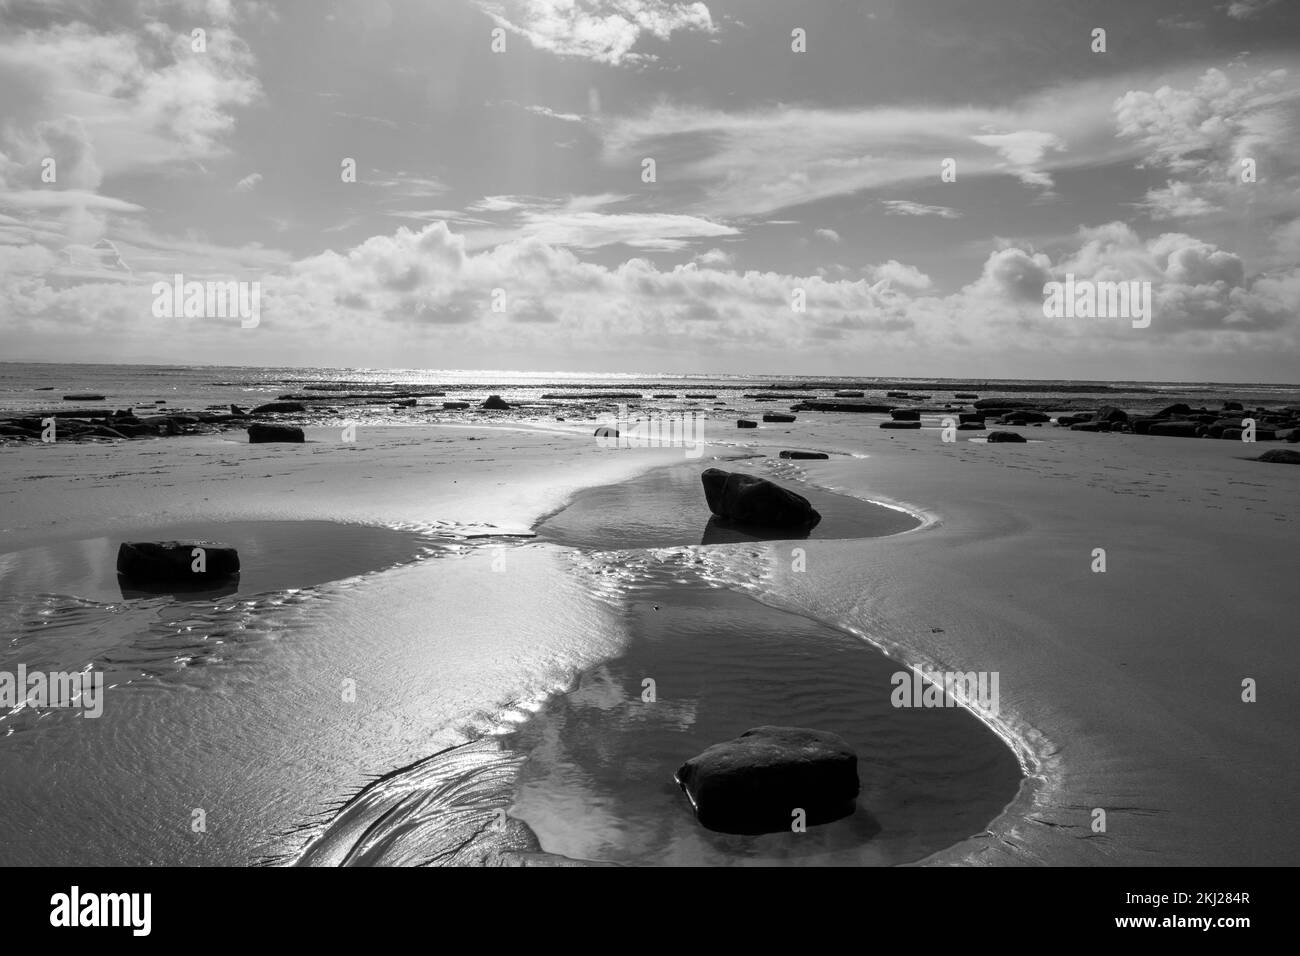 Noir et blanc de piscines de roche sur une belle plage de sable déserte à Lyme Regis Dorset Angleterre côte jurassique Banque D'Images